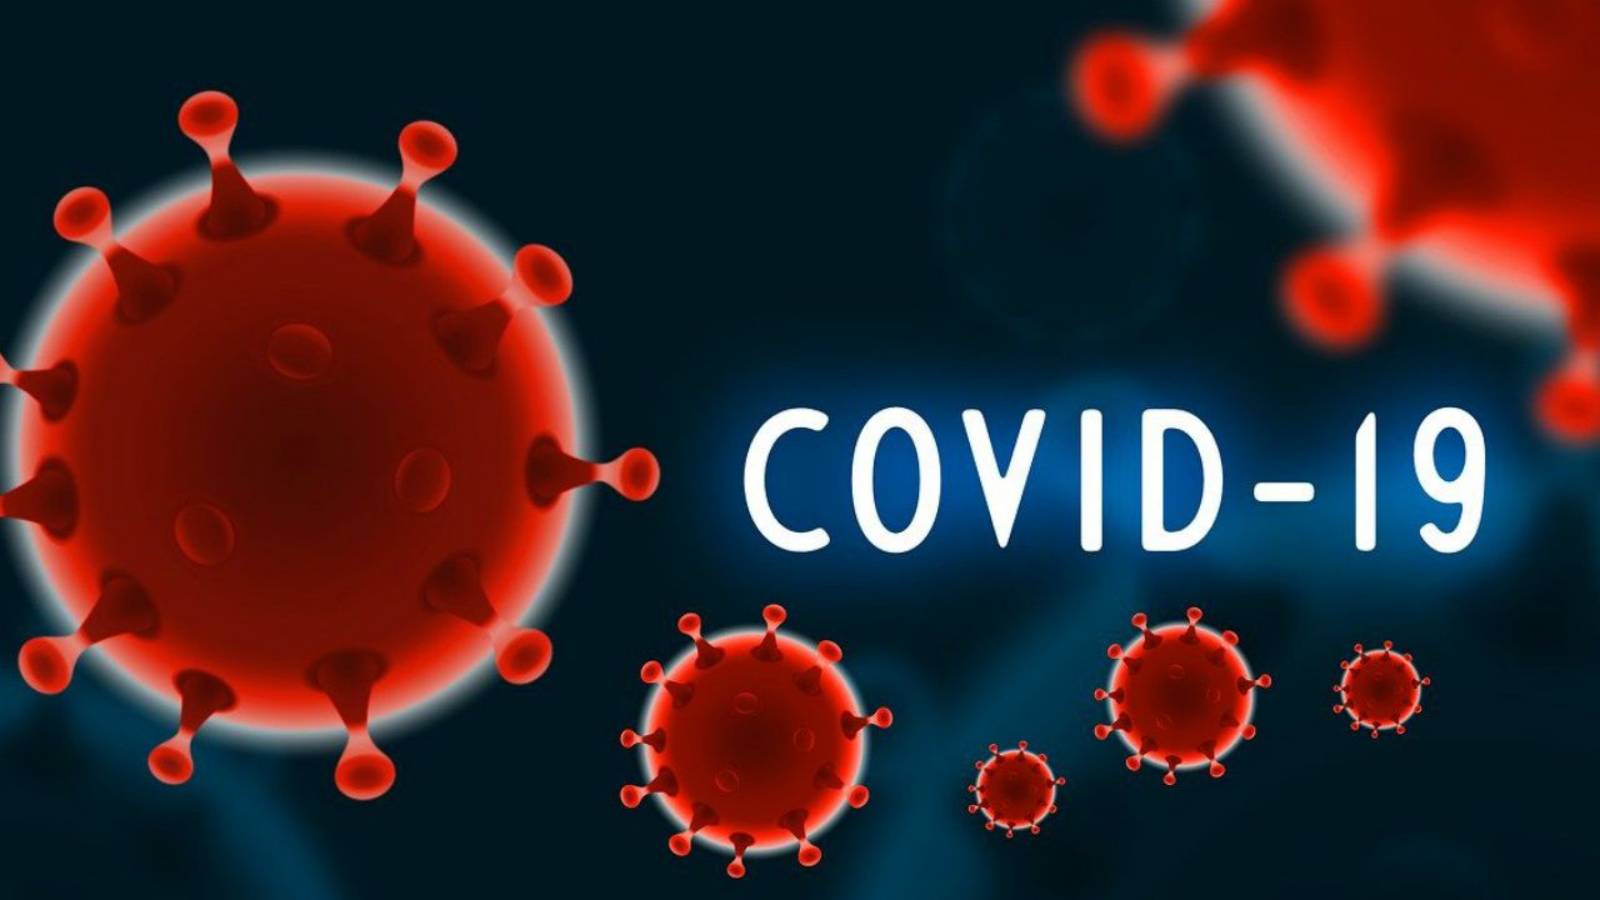 COVID-19 Romanian romanialaiset saivat kahden annoksen rokotteen